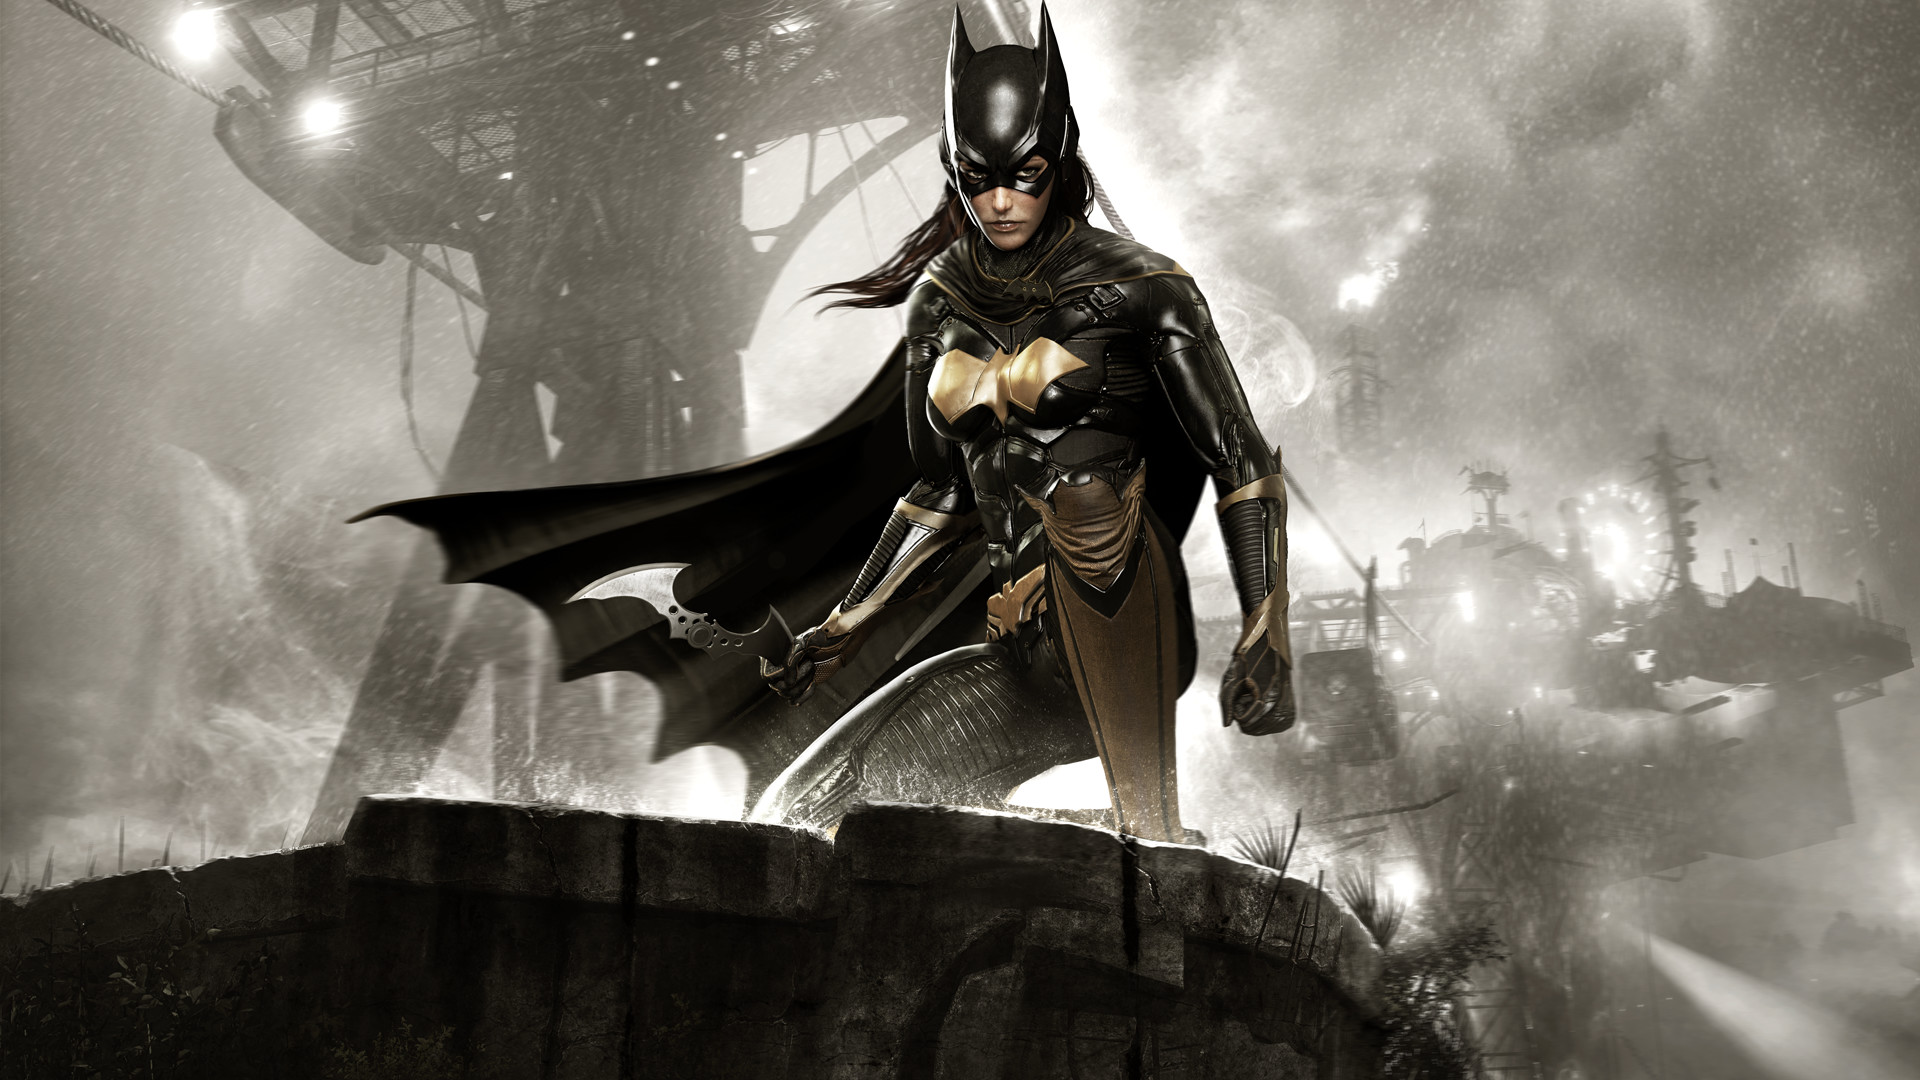 Batman™: Arkham Knight - A Matter of Family Featured Screenshot #1